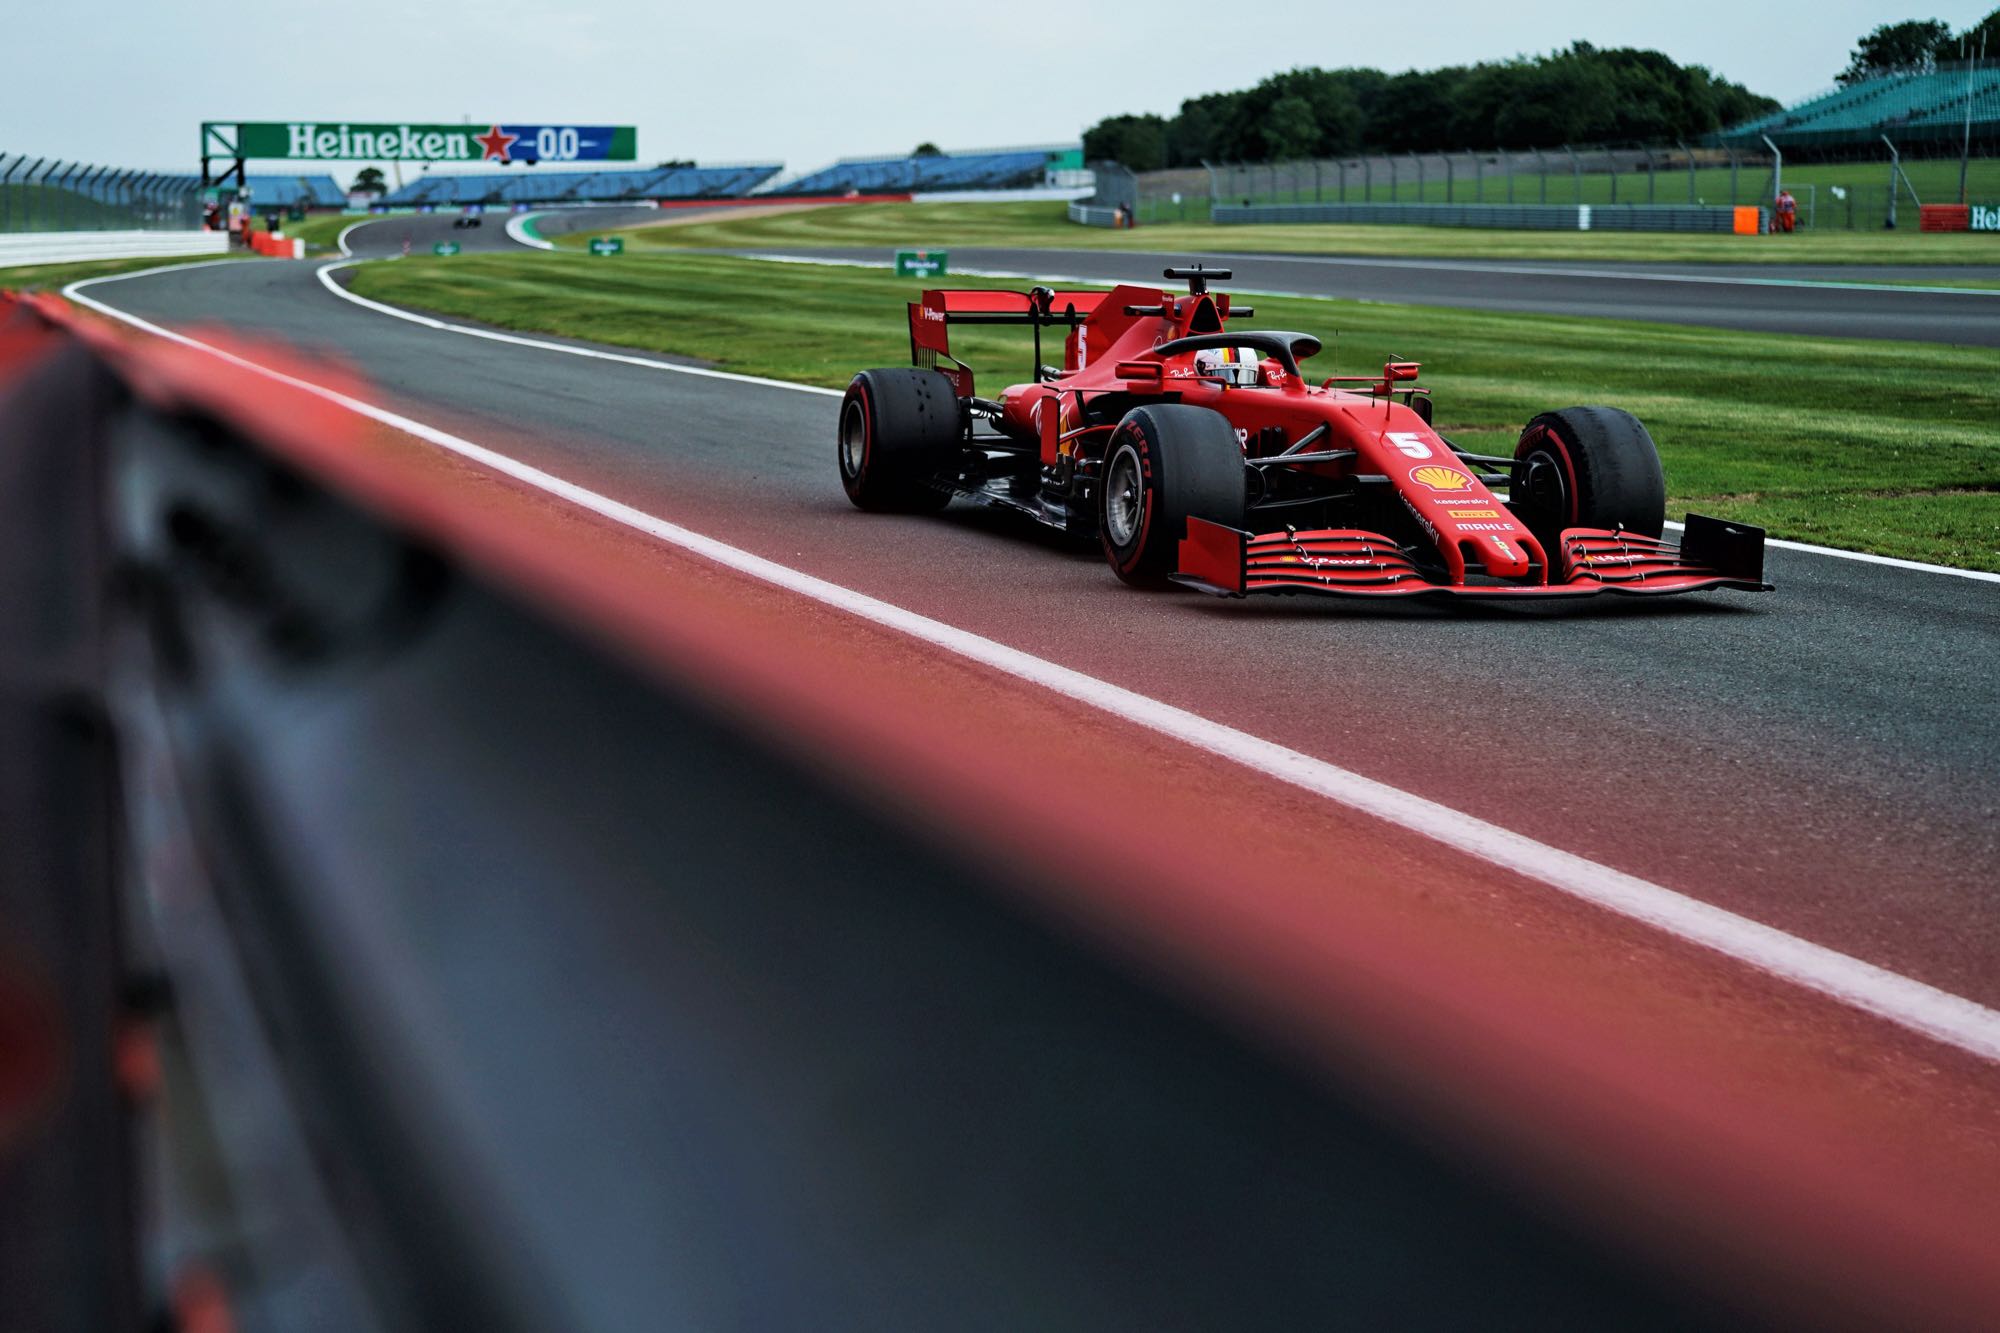 General 2000x1333 Sebastian Vettel Ferrari F1 Formula 1 race tracks formula cars Racing driver Scuderia Ferrari italian cars